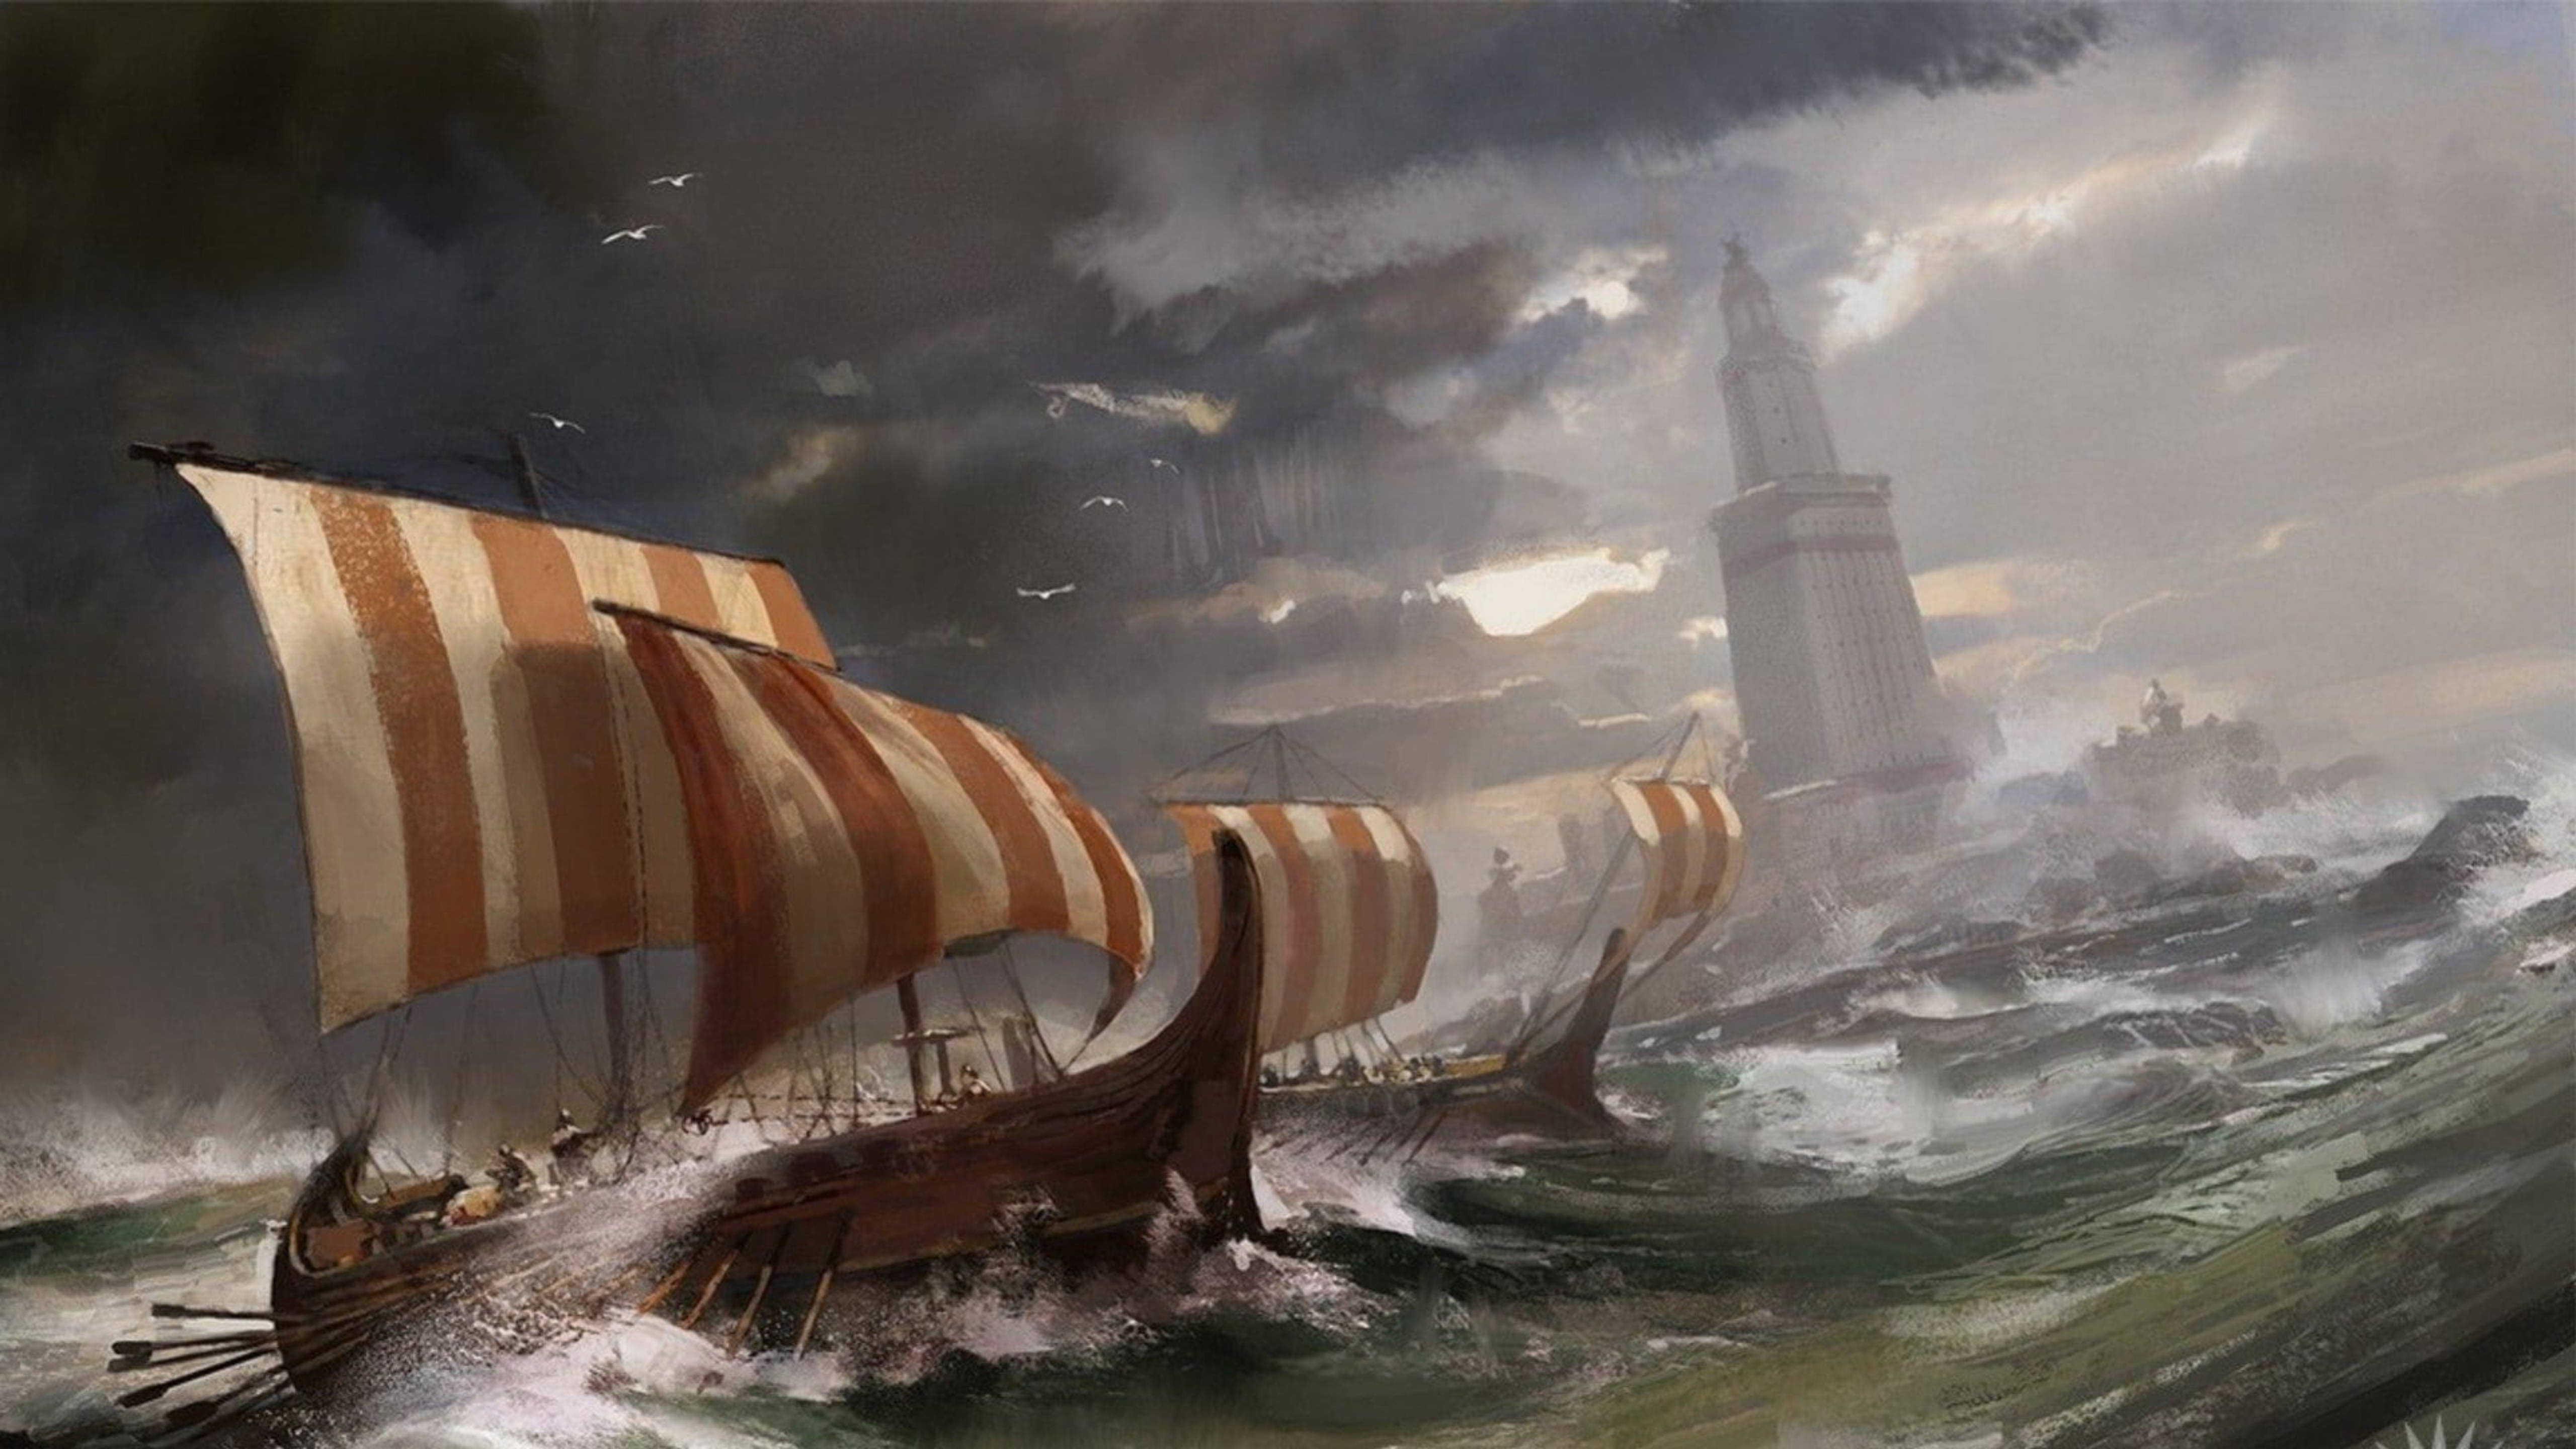 Путь кораблям к александрии показывал. Викинги сражение дракар. Викинг дракар битва. Викинг фэнтези арт дракар. Драккары викингов шторм.